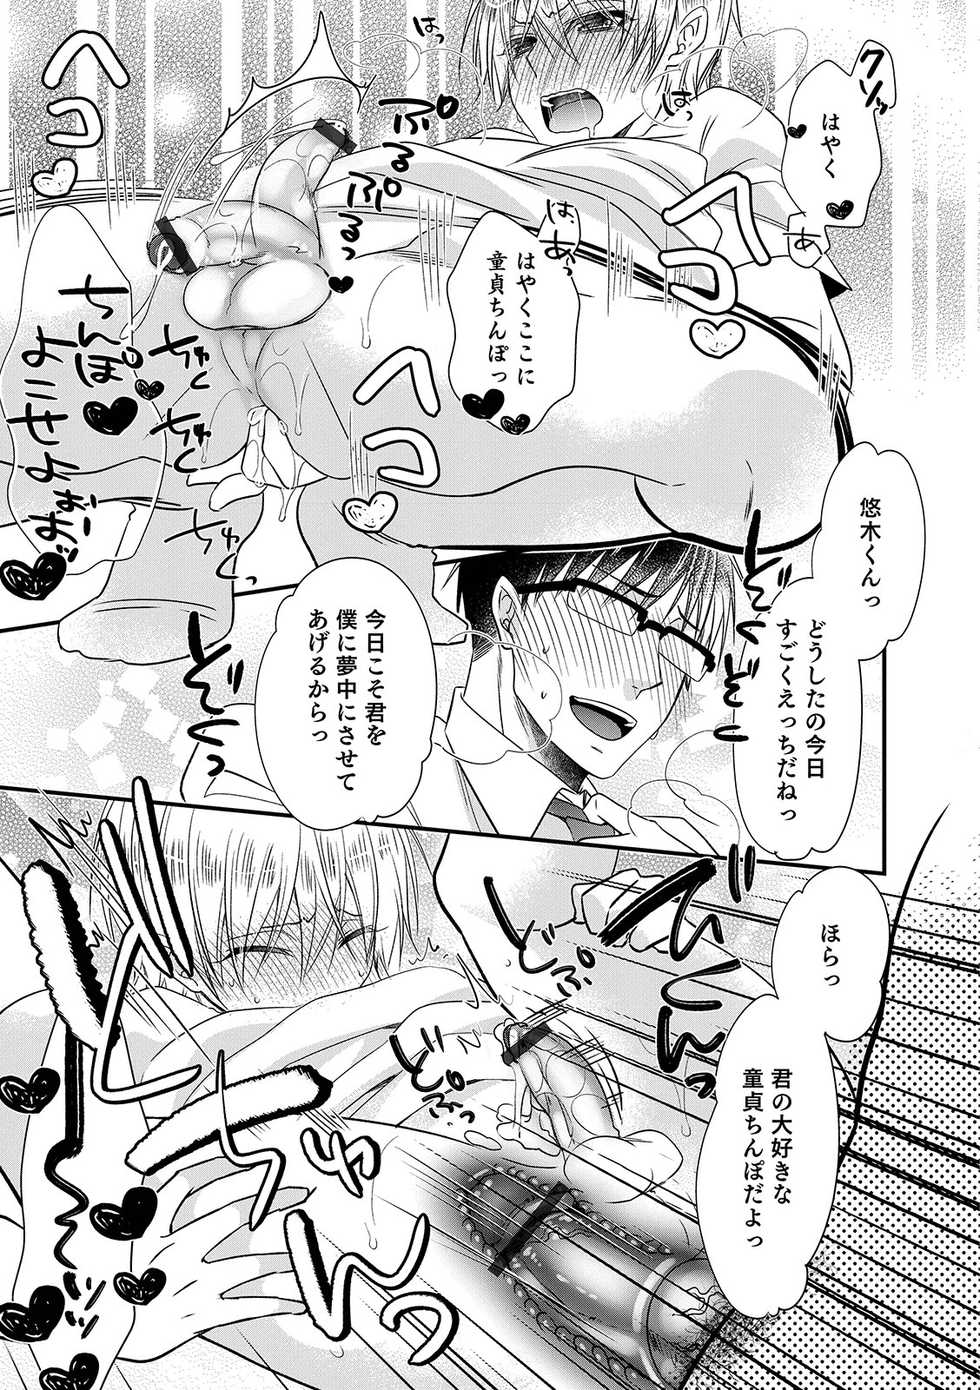 [Anthology] Otokonoko Heaven's Door 9 [Digital] - Page 39